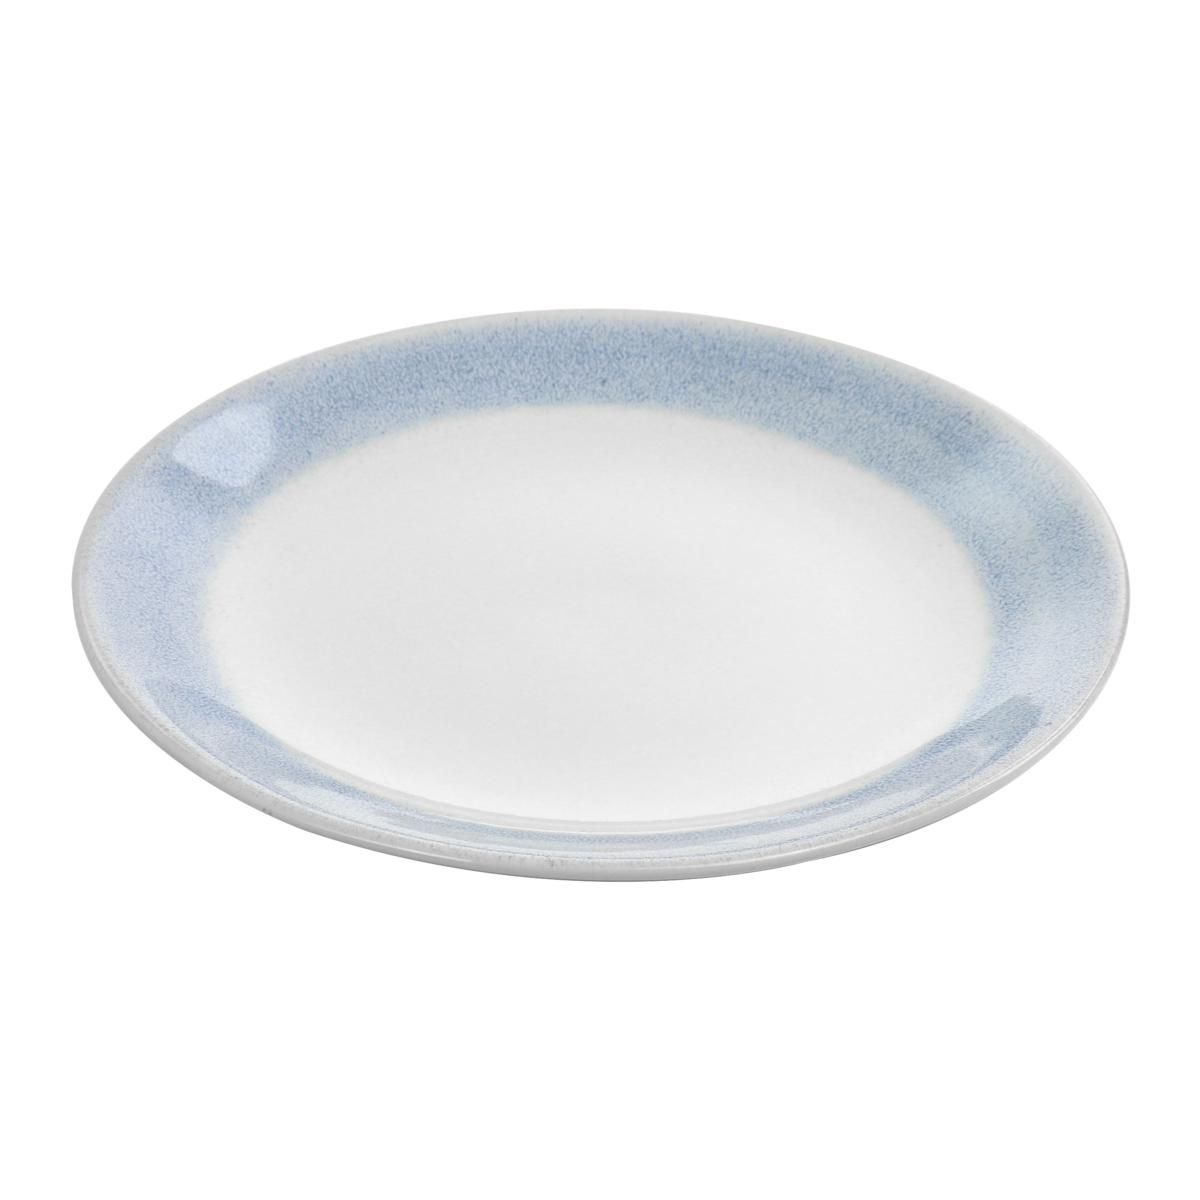 Martha Stewart 11" Stoneware Dinner Plate with Blue Rim - 20200187 | HSN | HSN